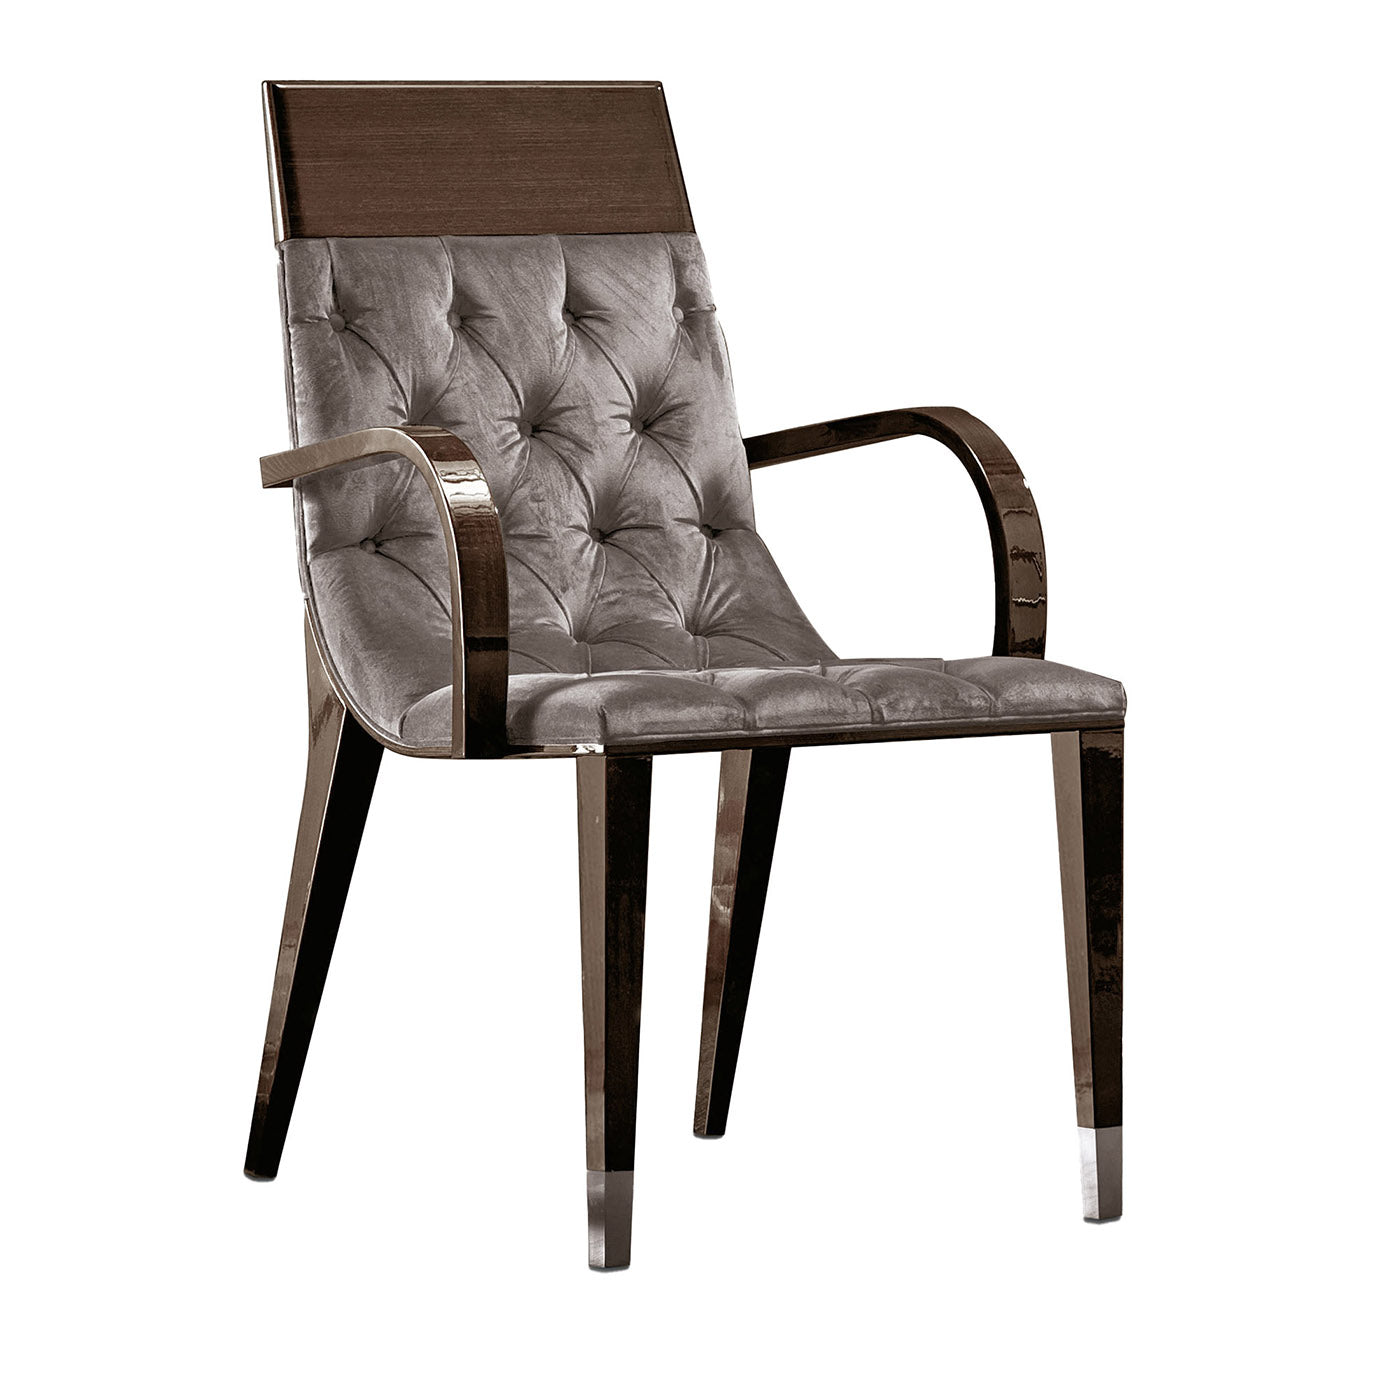 Chaise en tissu gris et brun touffeté Absolute avec accoudoirs - Vue principale